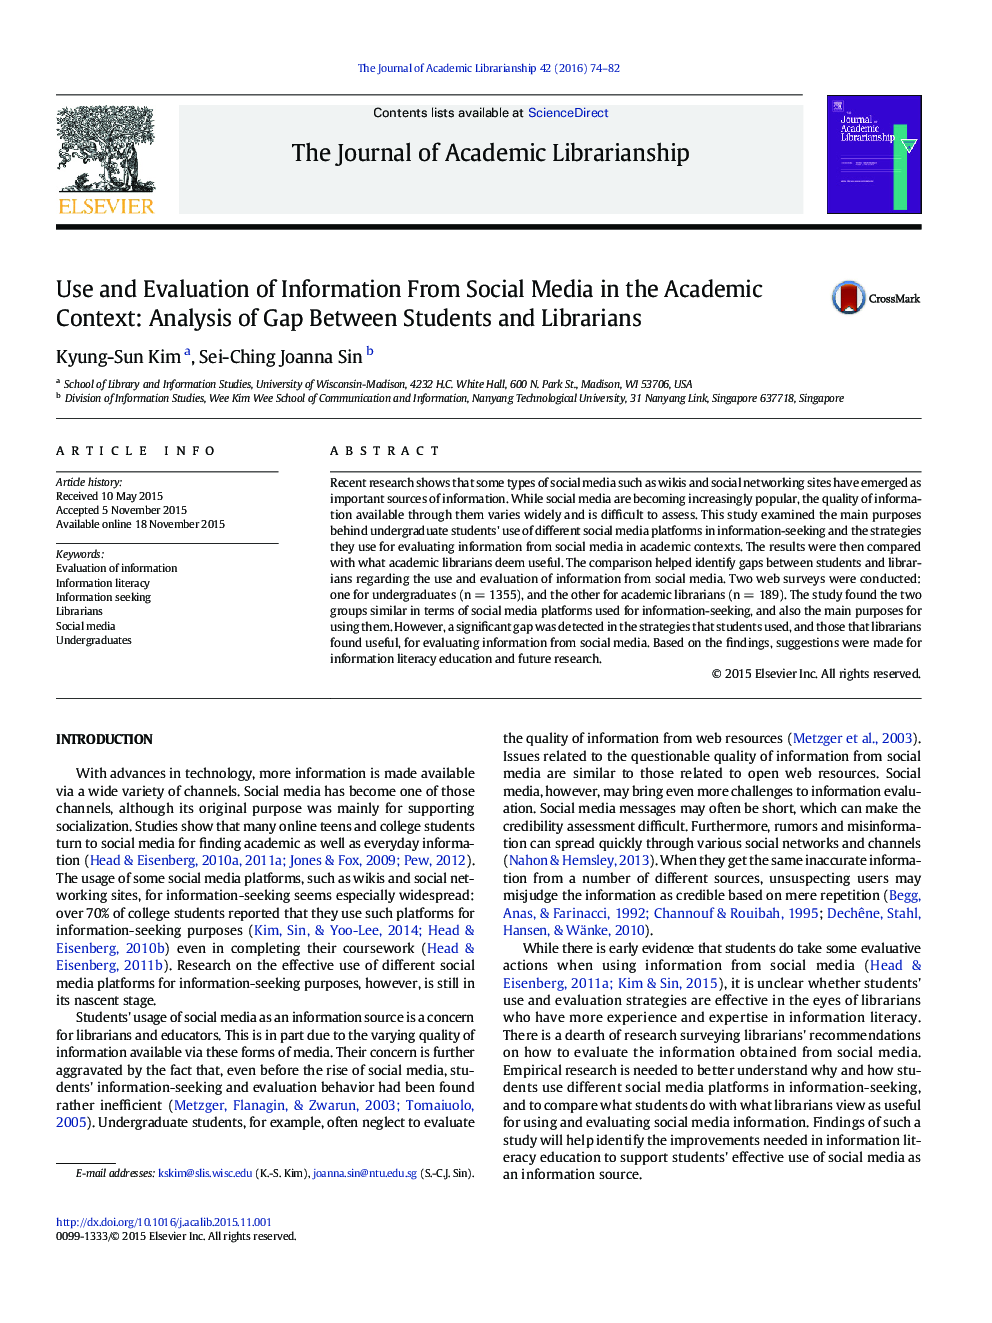 استفاده و بررسی اطلاعات از رسانه های اجتماعی در زمینه علمی: تجزیه و تحلیل شکاف بین دانش آموزان و کتابداران